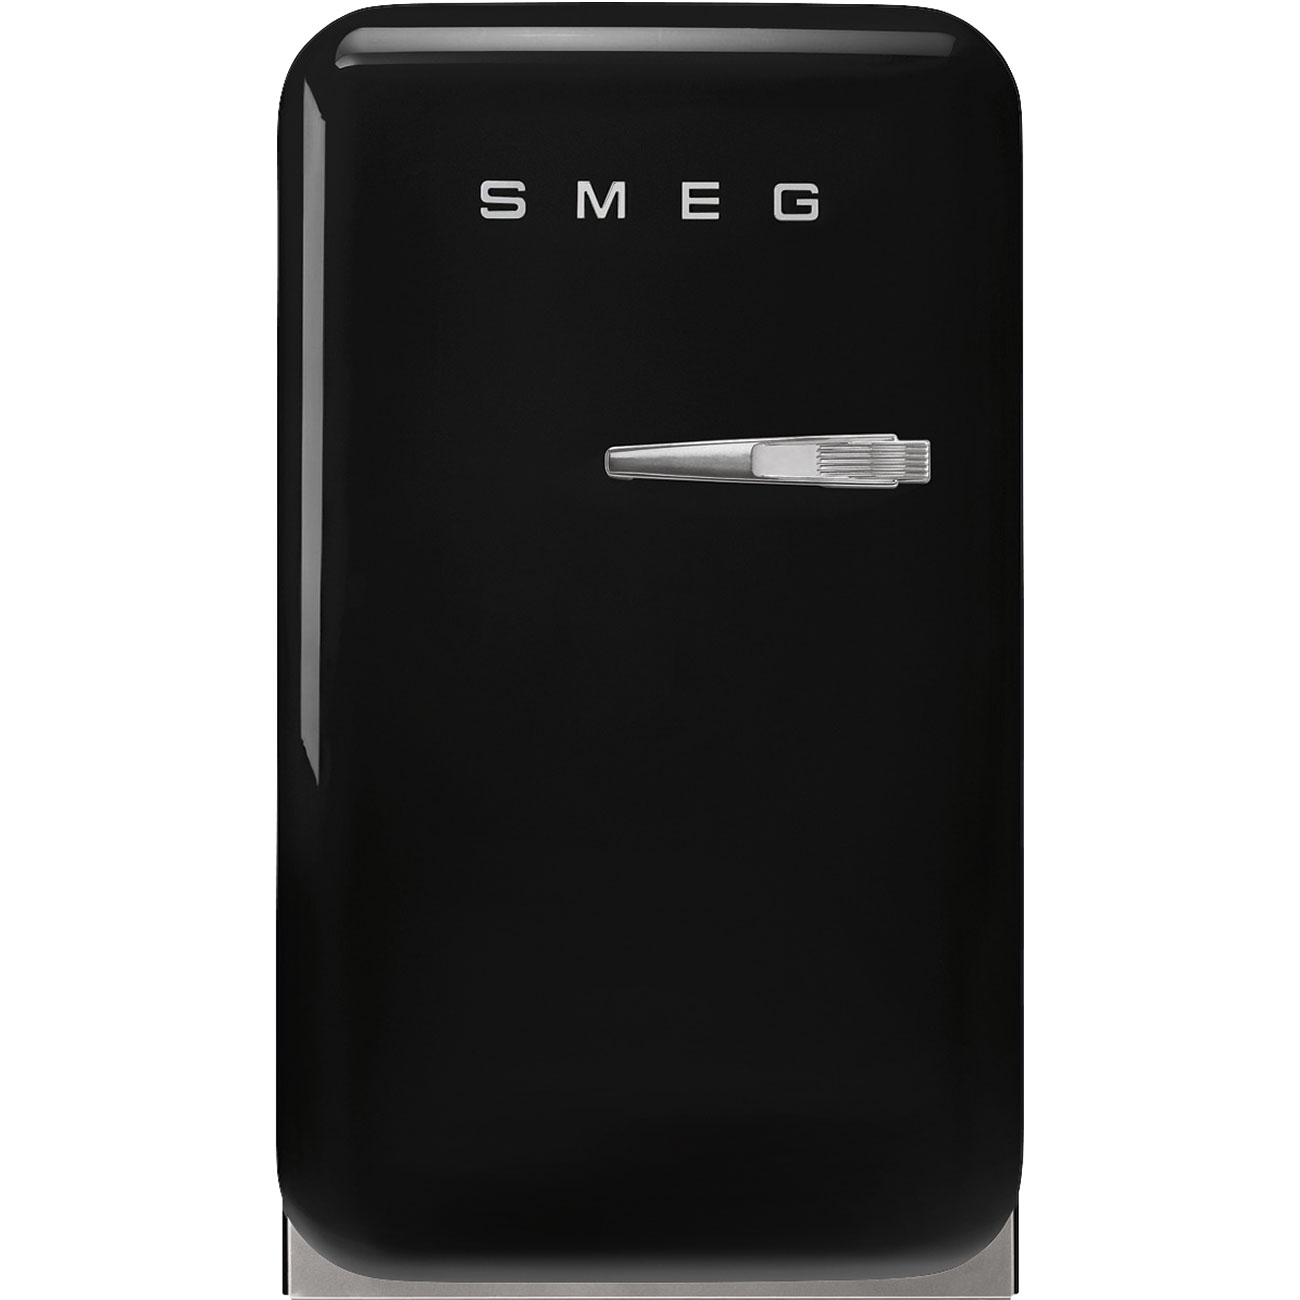 Black refrigerator - Smeg_1